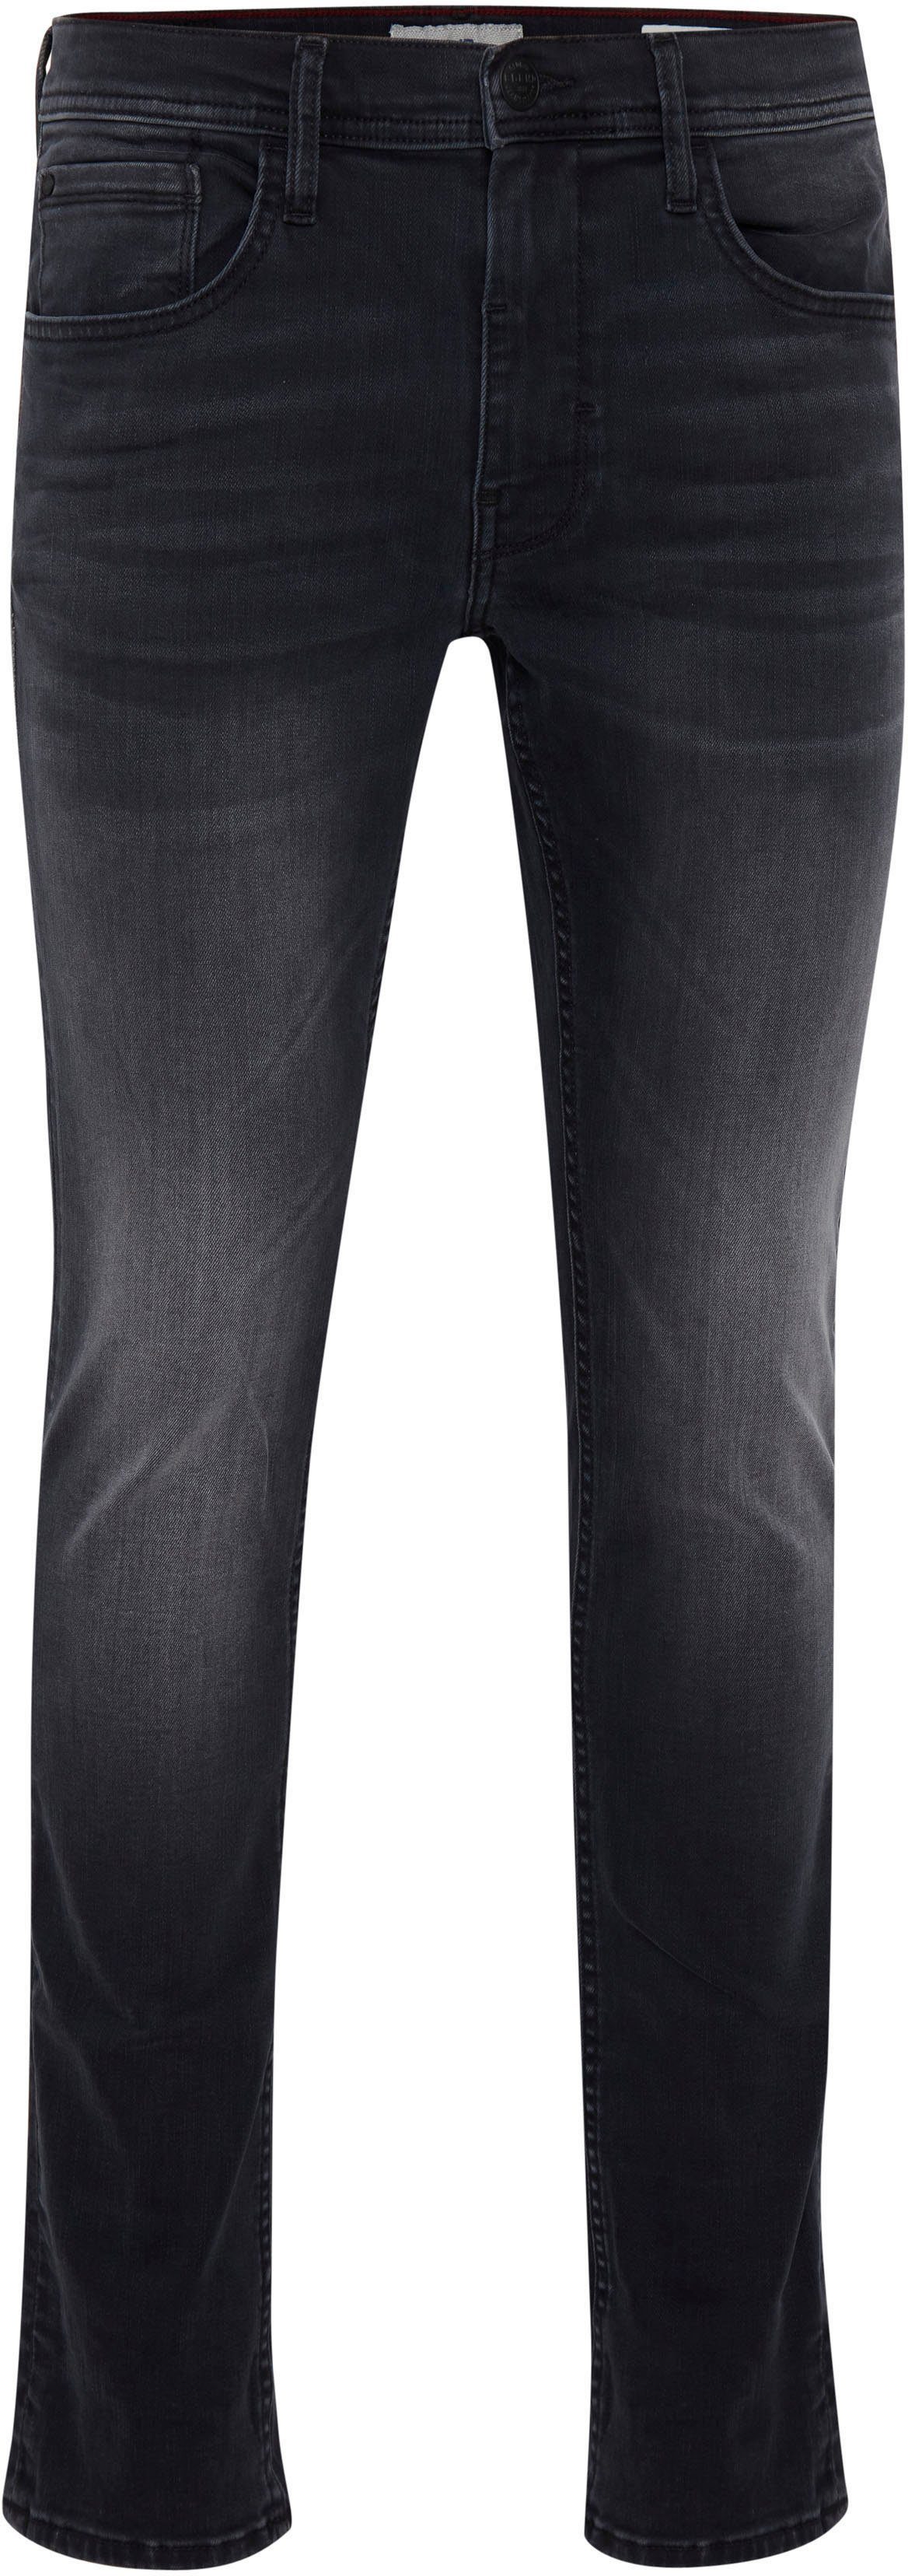 Slim-fit-Jeans Jet washed Multiflex Blend black